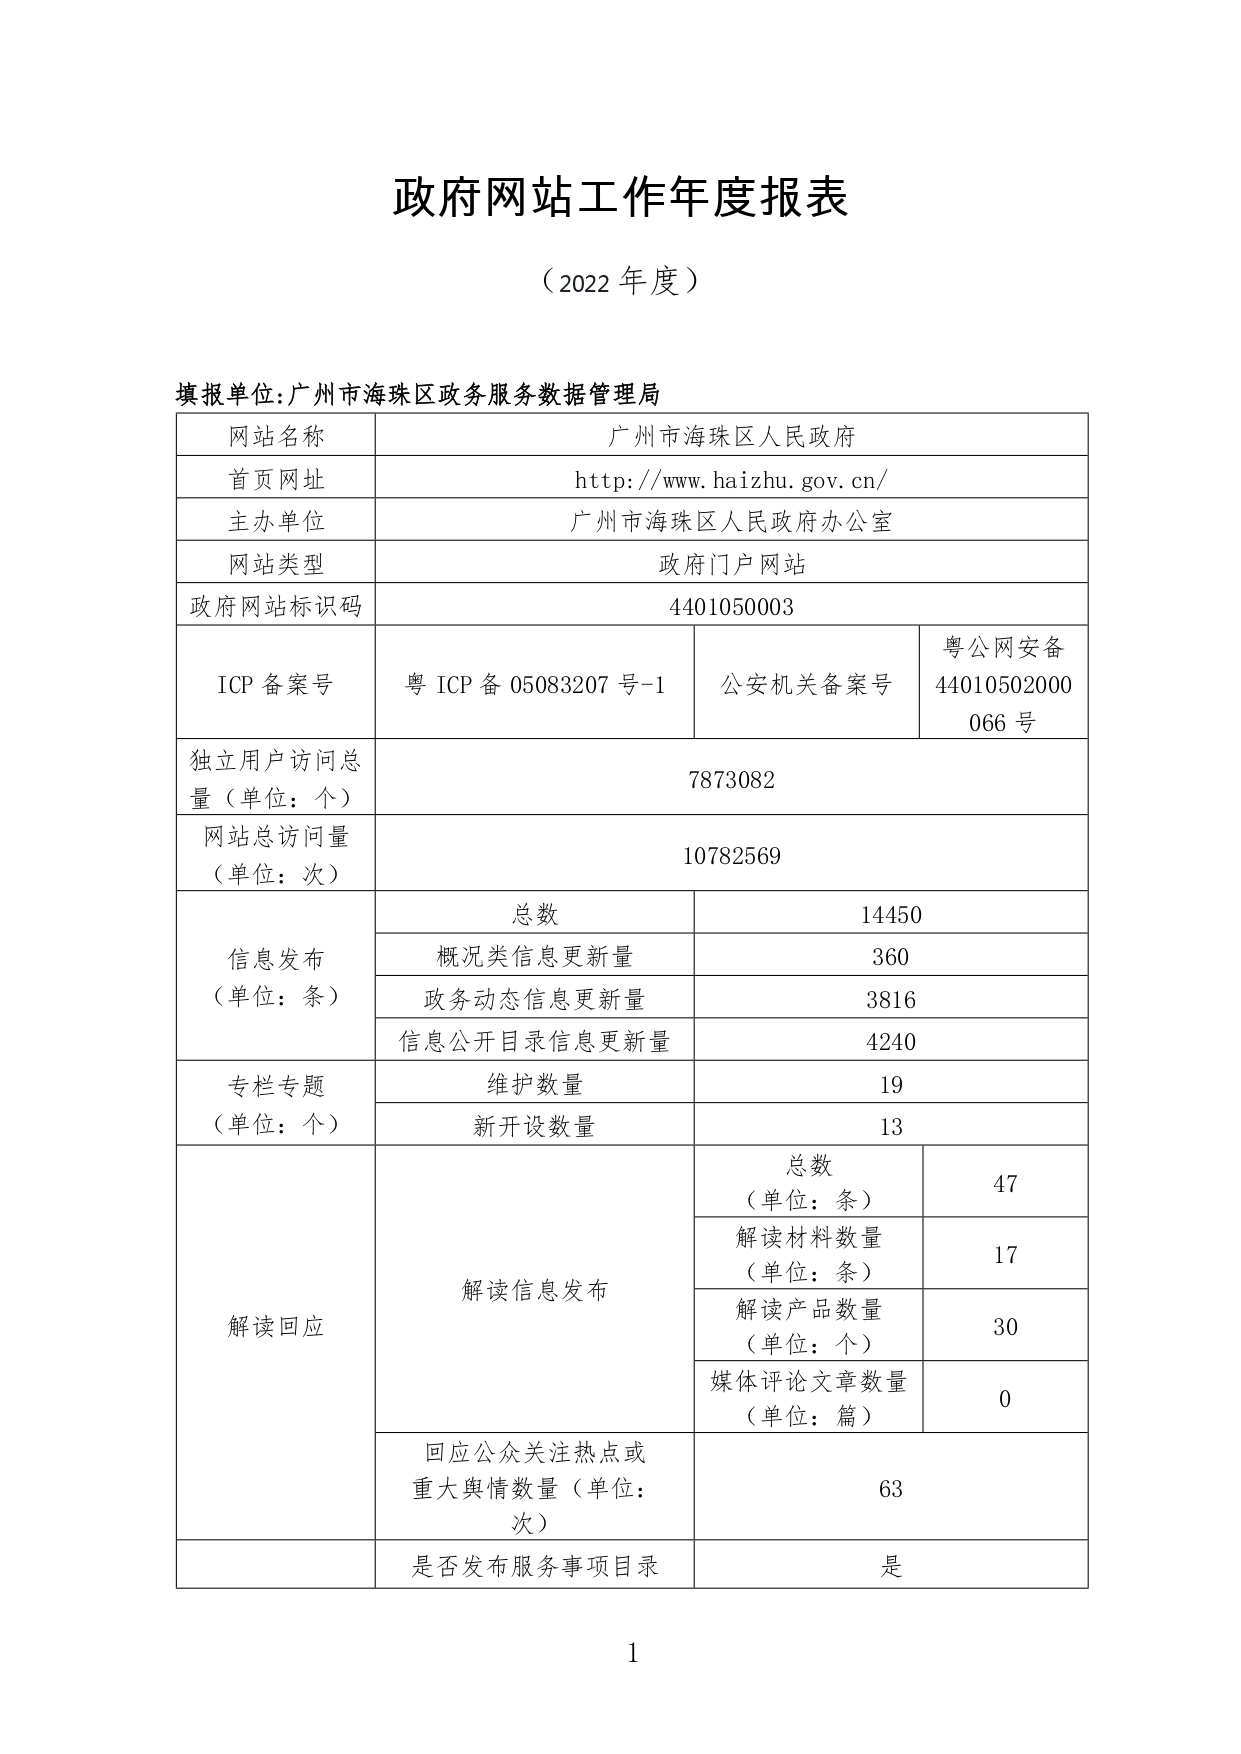 广州市海珠区人民政府网站工作2022年度报表_page-0001.jpg